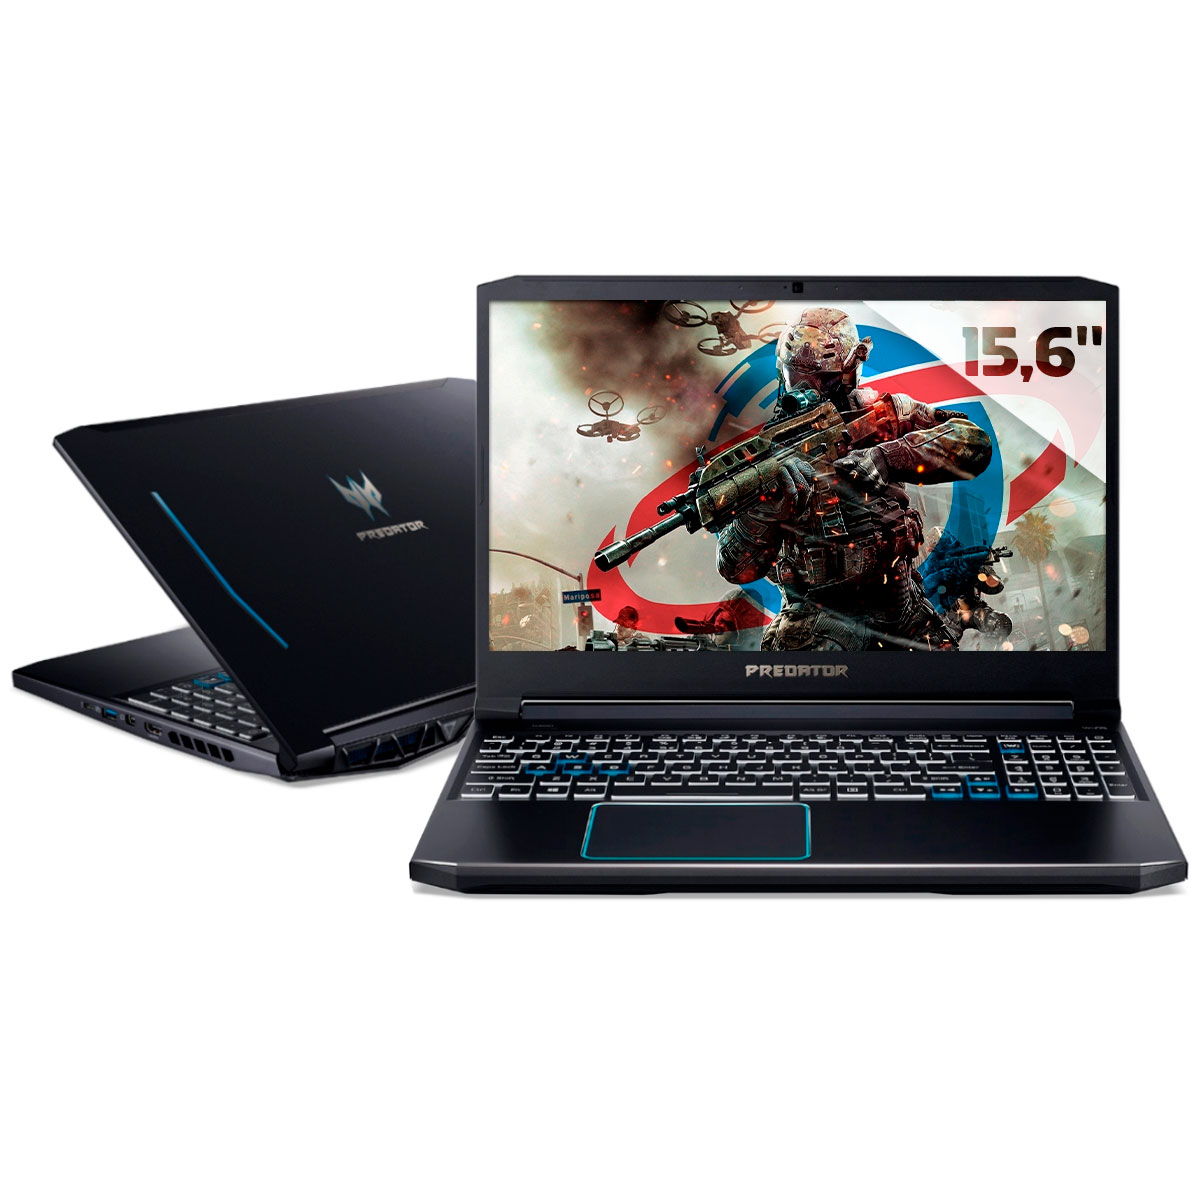 Notebook Acer Gaming Predator Helios 300 - Intel i7 10750H, 32GB, HD 1TB + SSD 256GB, GeForce RTX 2070 8GB, Tela 15.6